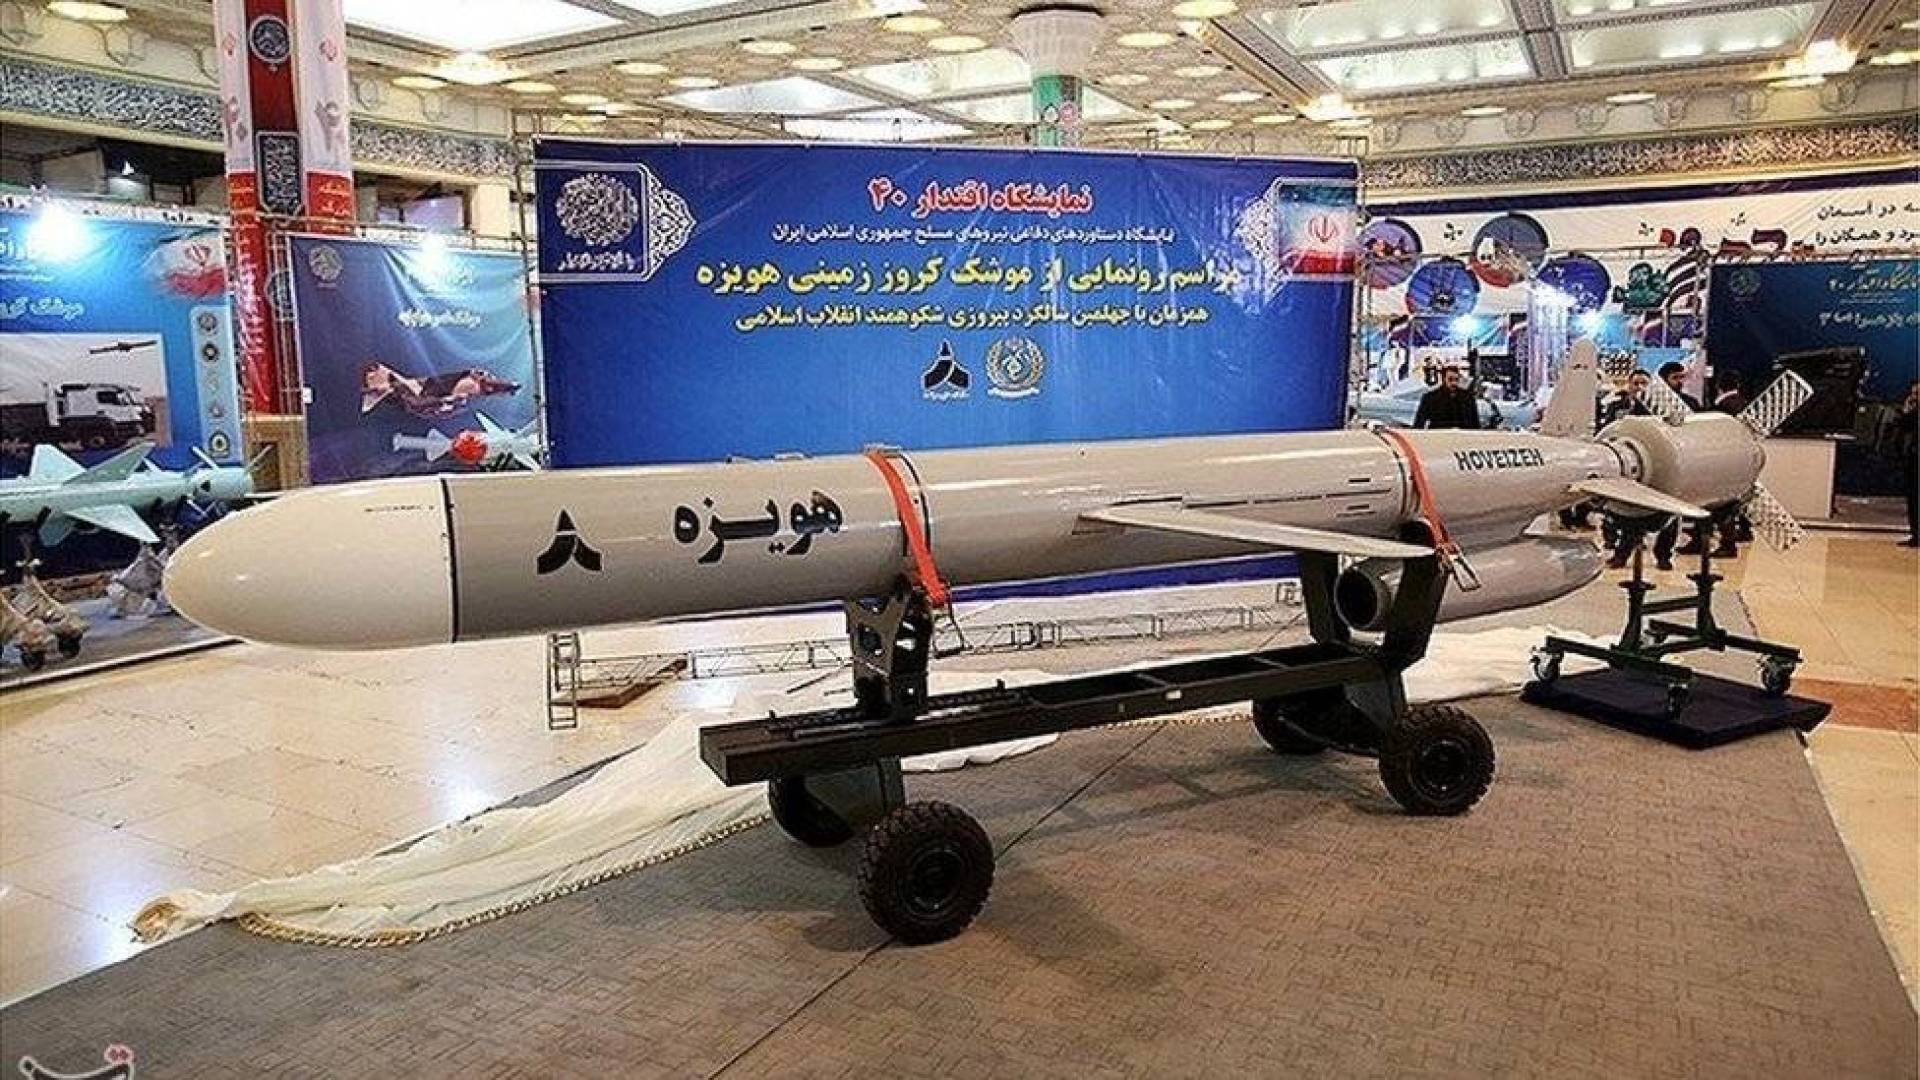 التحول العسكري لإيران: إنجازات تصميم وتصنيع الصواريخ الكروز فرط الصوتية